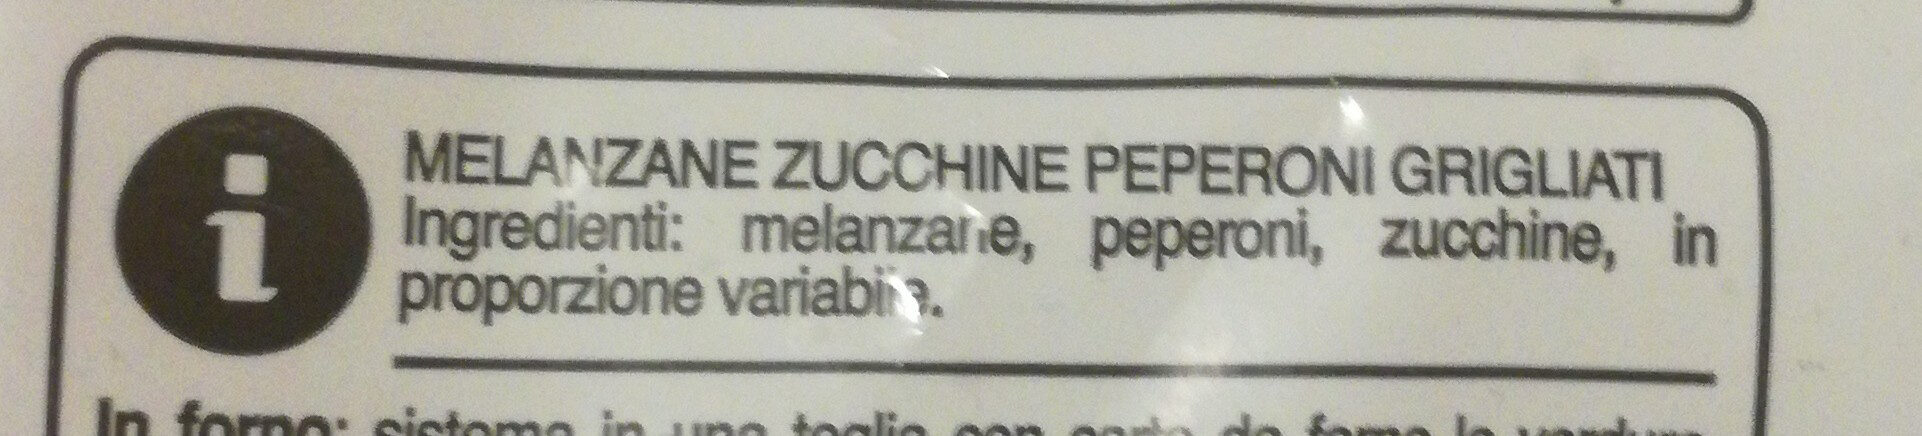 Melanzane zucchine peperoni grigliati - Ingredienti